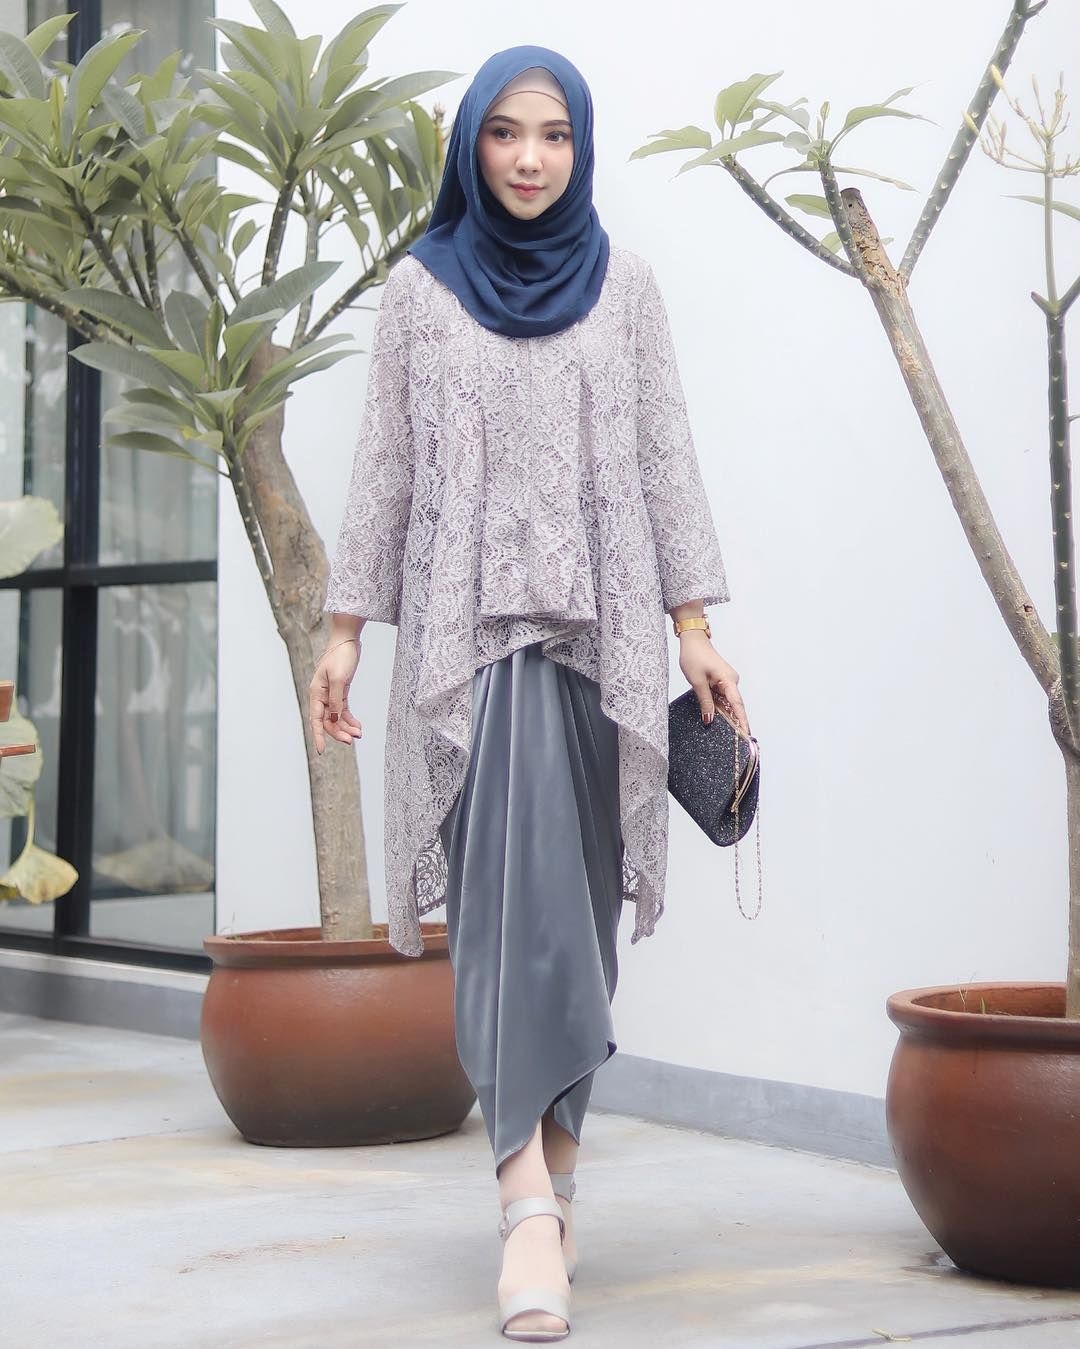 baju kondangan simple hijab dengan kain lilit